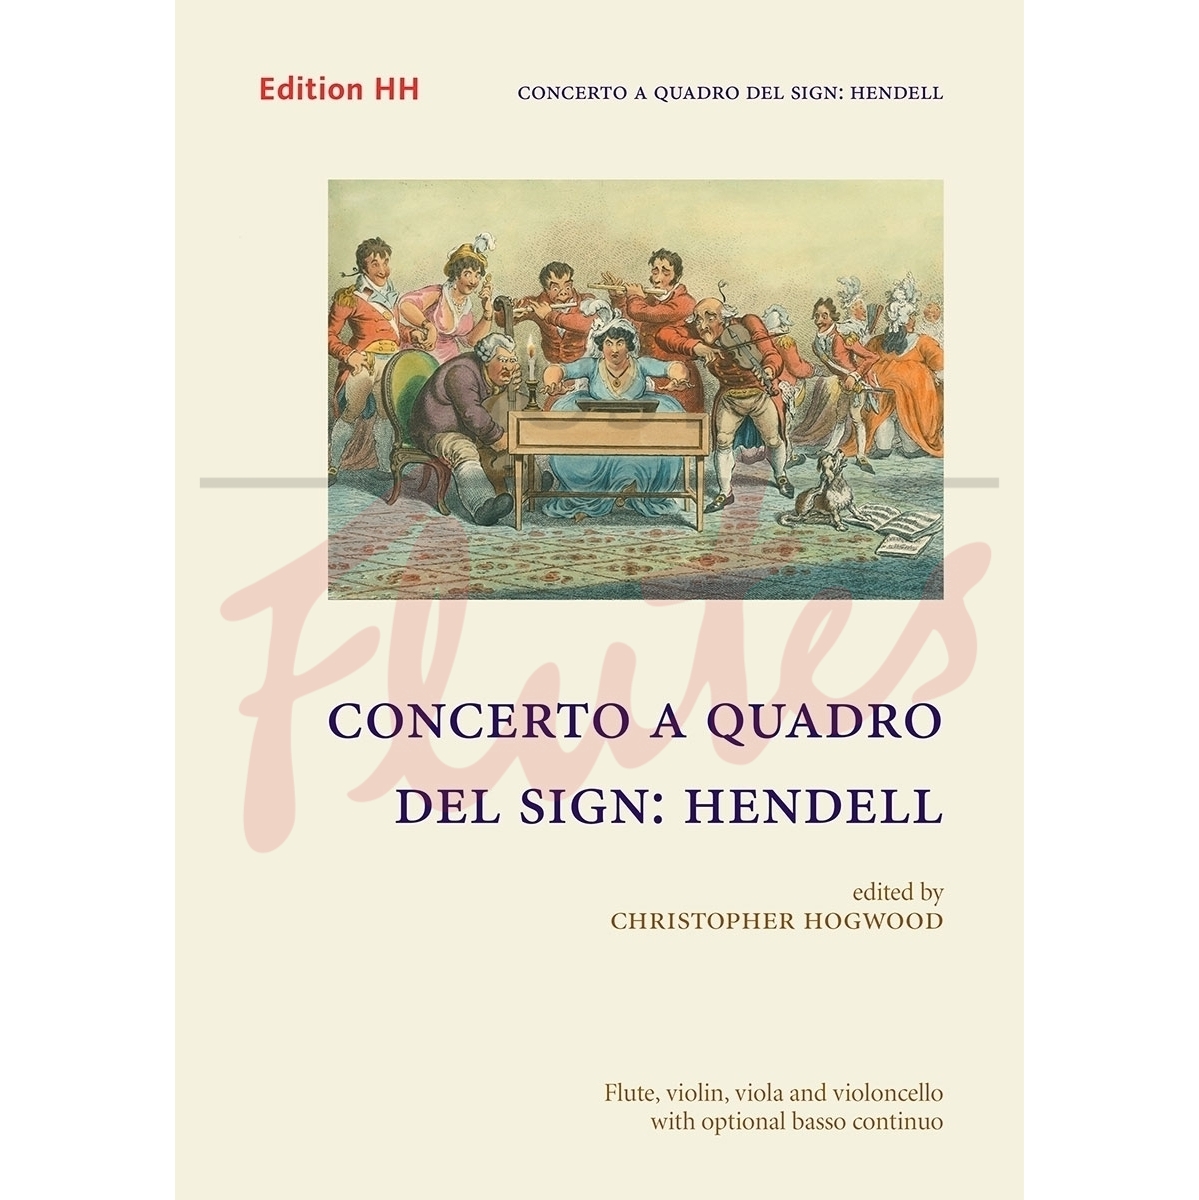 Concerto a Quadro for Flute, Violin, Viola and Cello